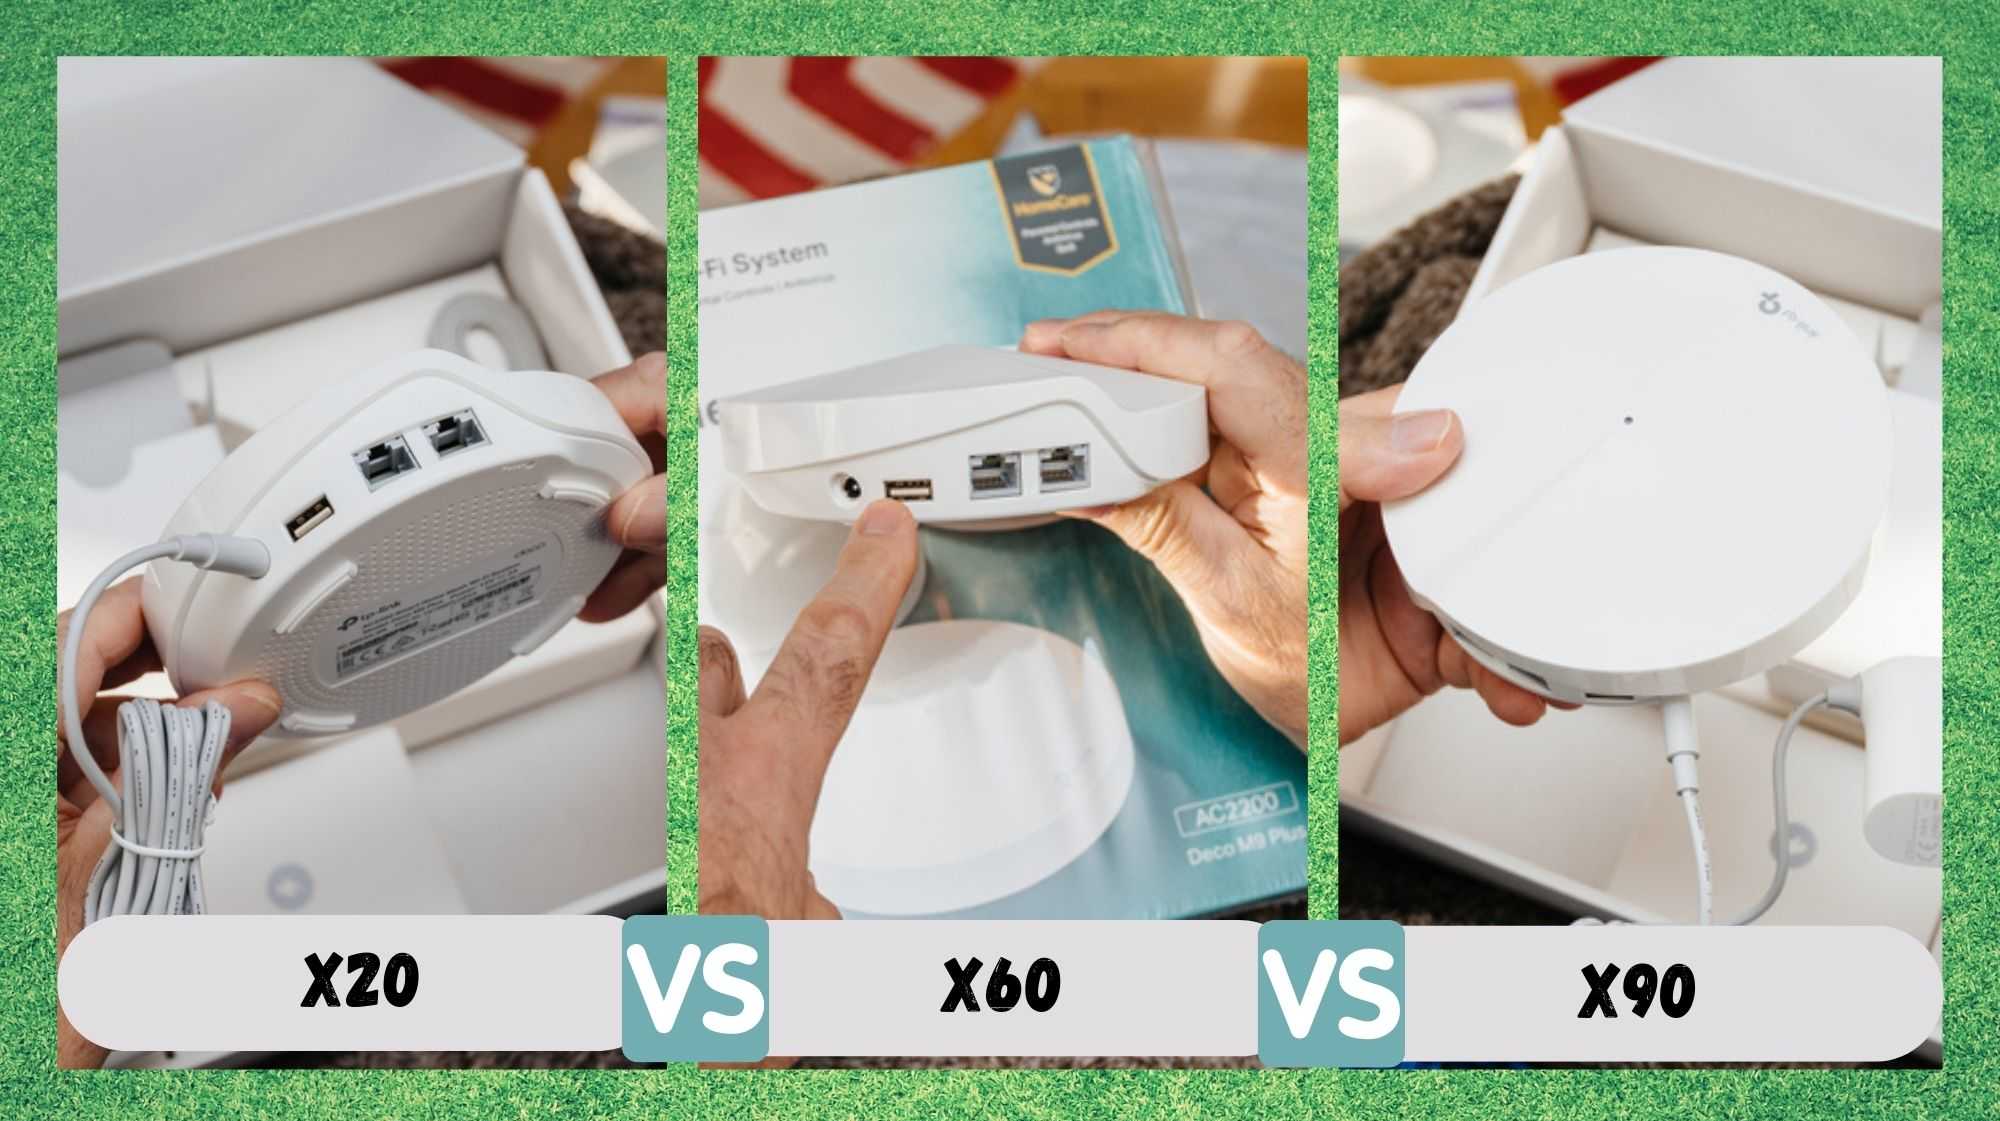 A comparación definitiva entre TP-Link Deco X20 vs X60 vs X90